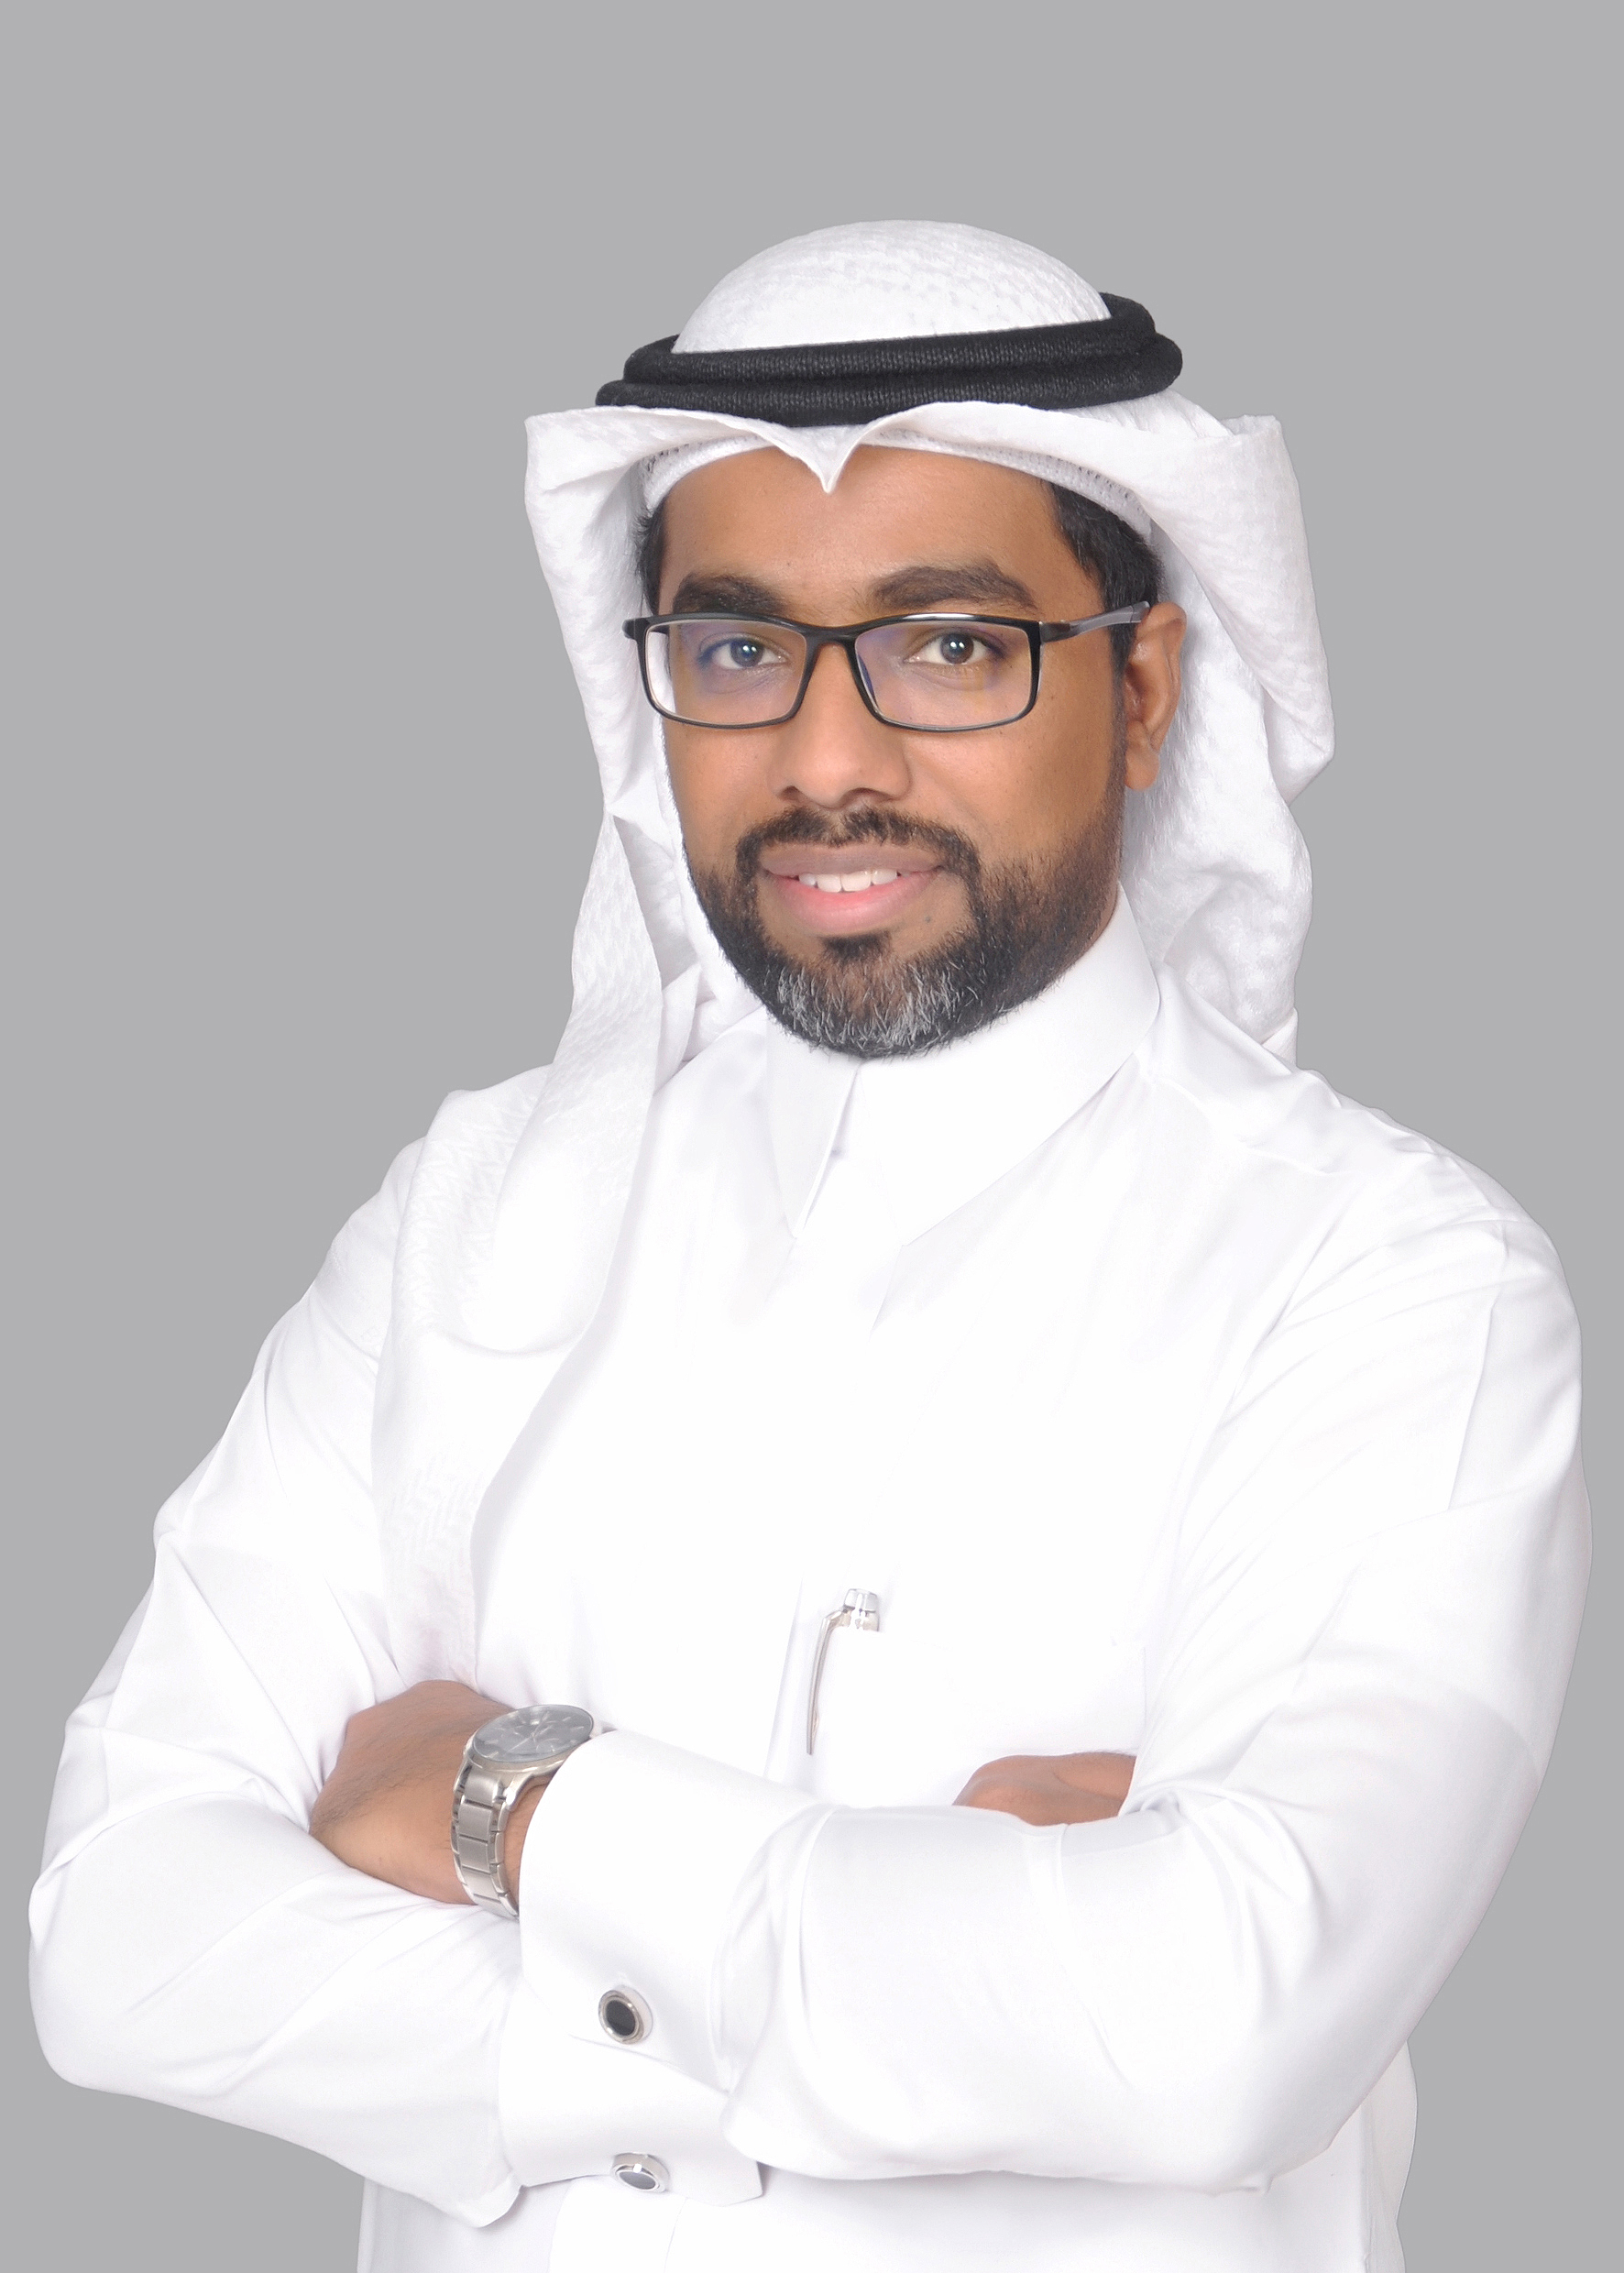 الدور الحيوي لتقنية الجيل الخامس في تعزيز عملية التحول الرقمي في المملكة العربية السعودية 